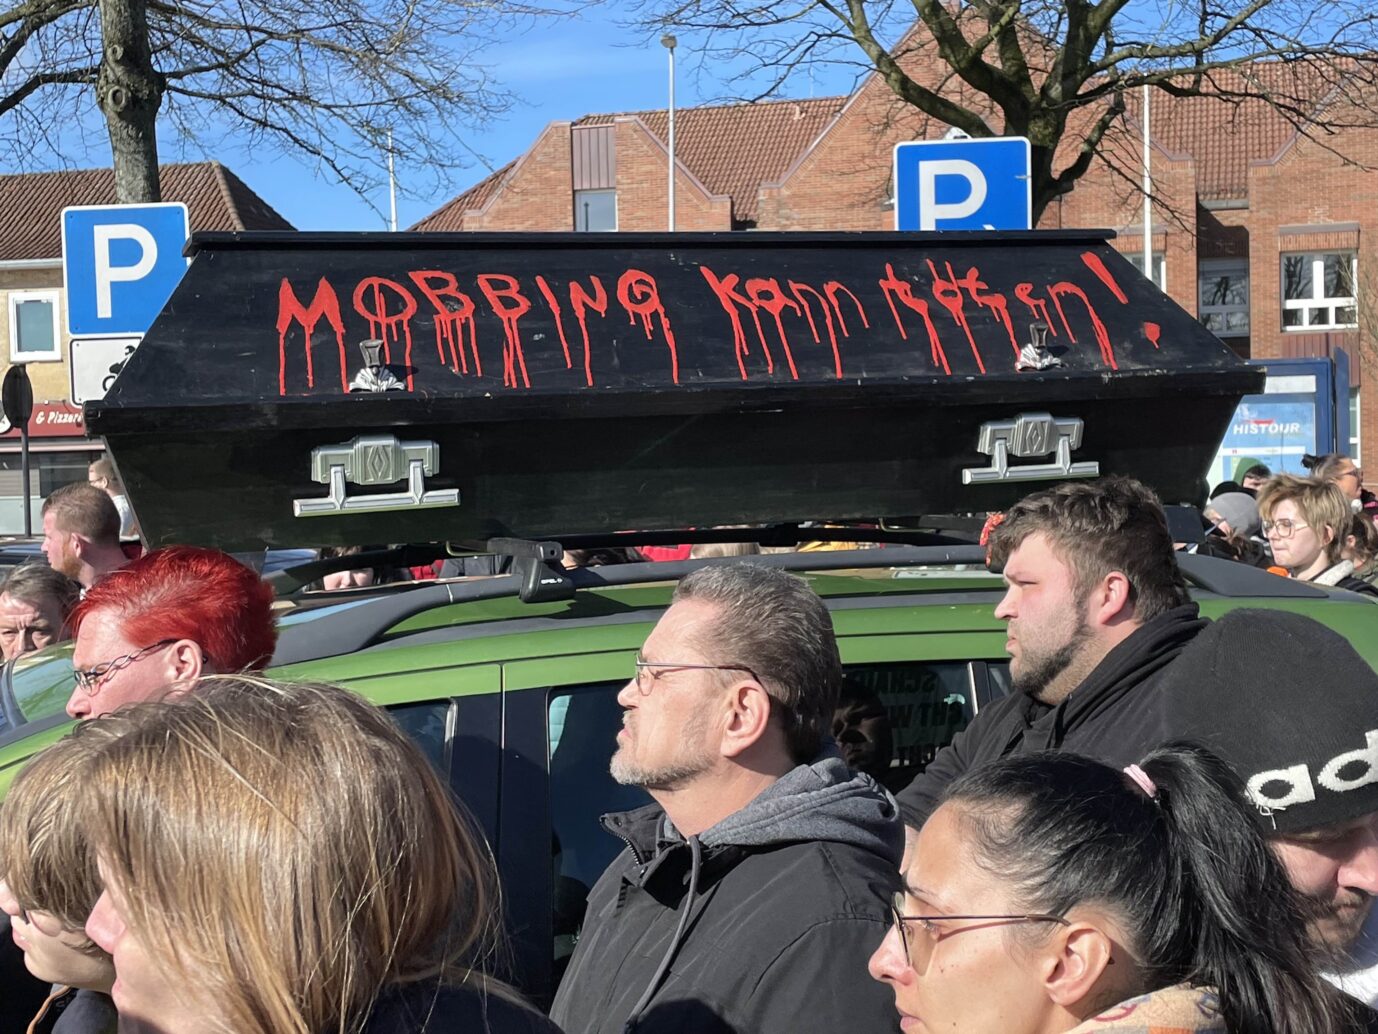 "Mobbing tötet": symbolischer Sarg auf der Veranstaltung in Heide